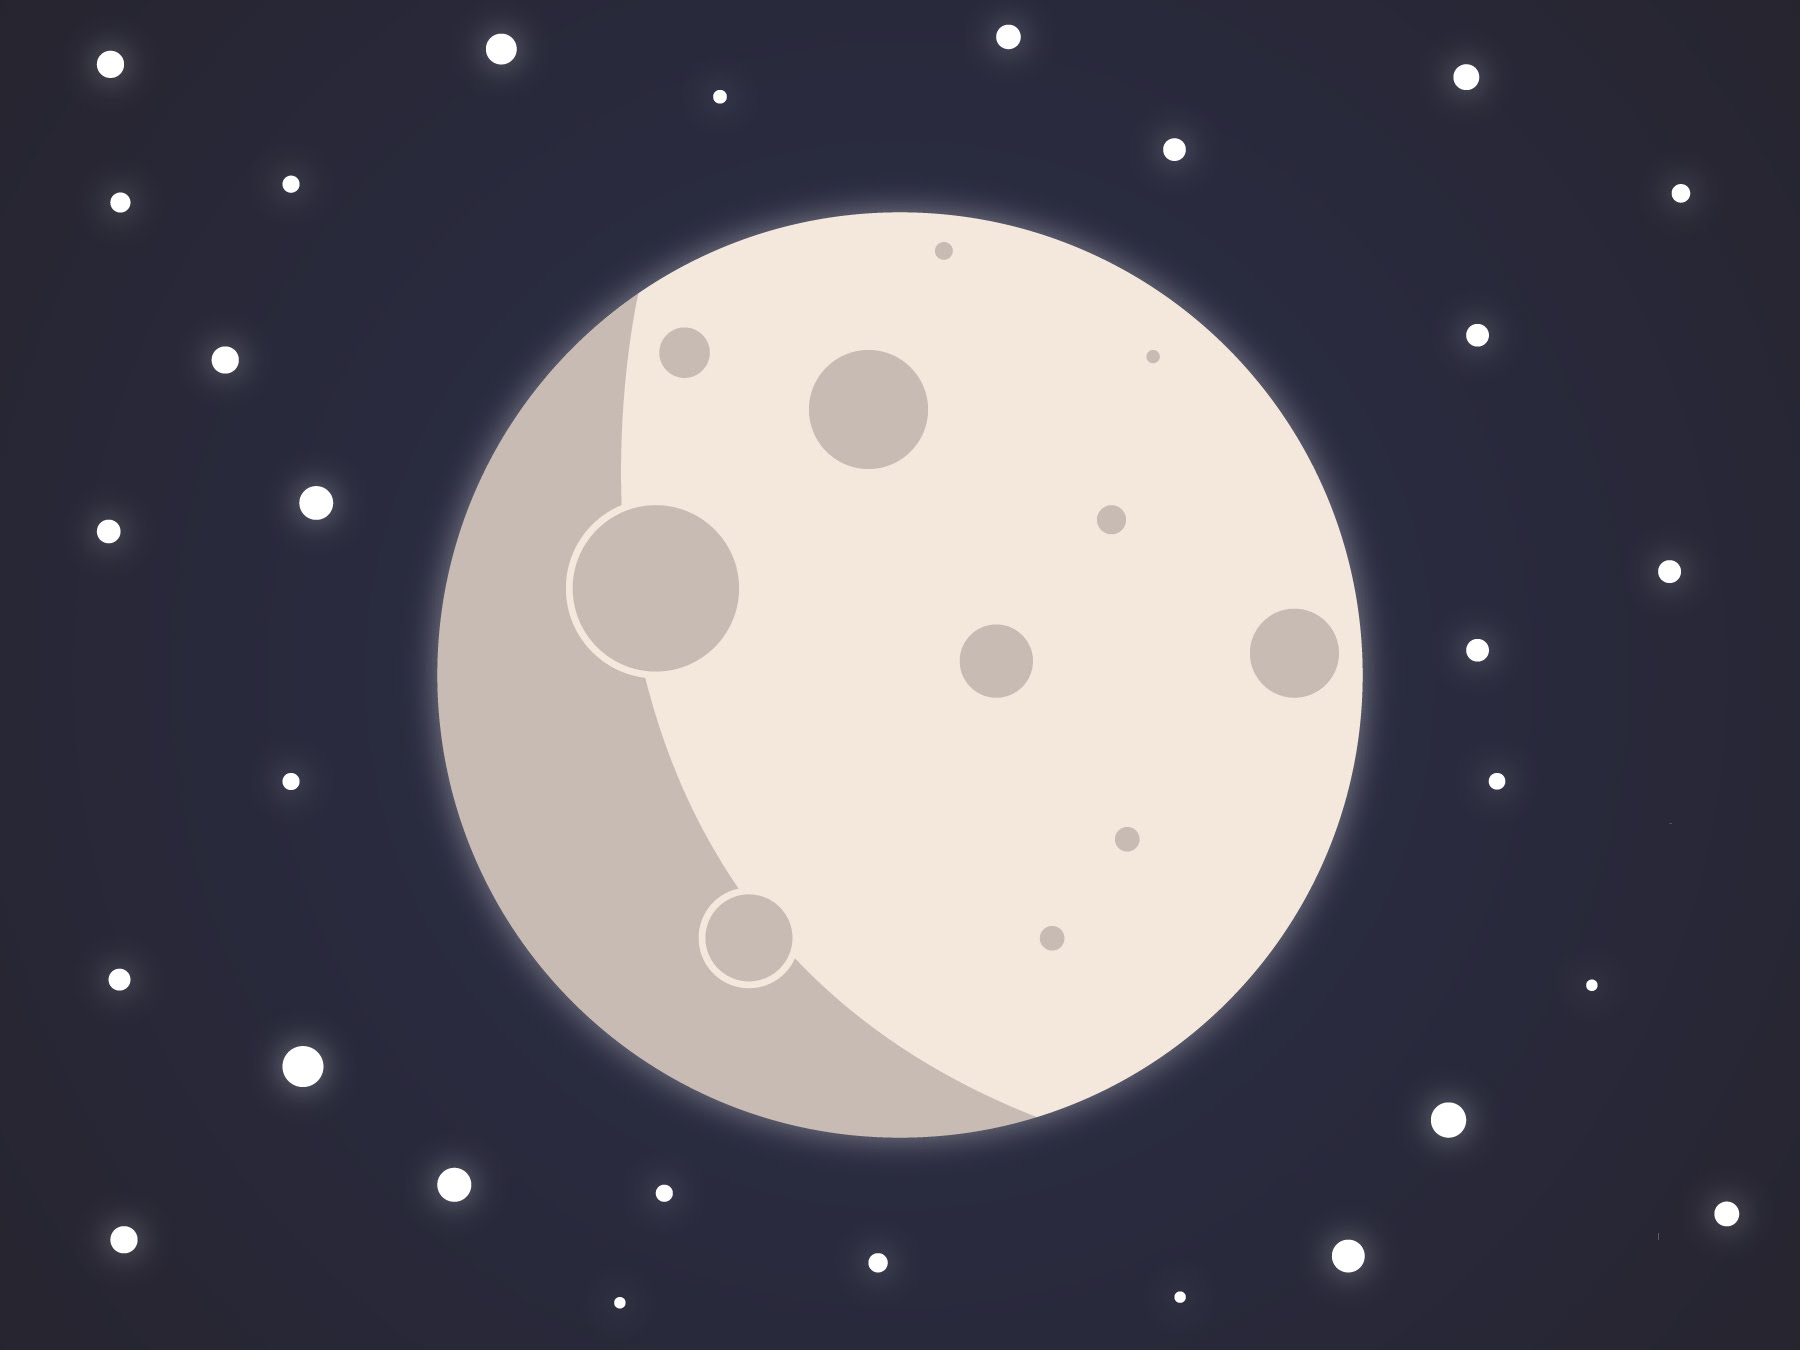 Halloween Moon minimal vector design | Adobe Illustrator Speedart ...